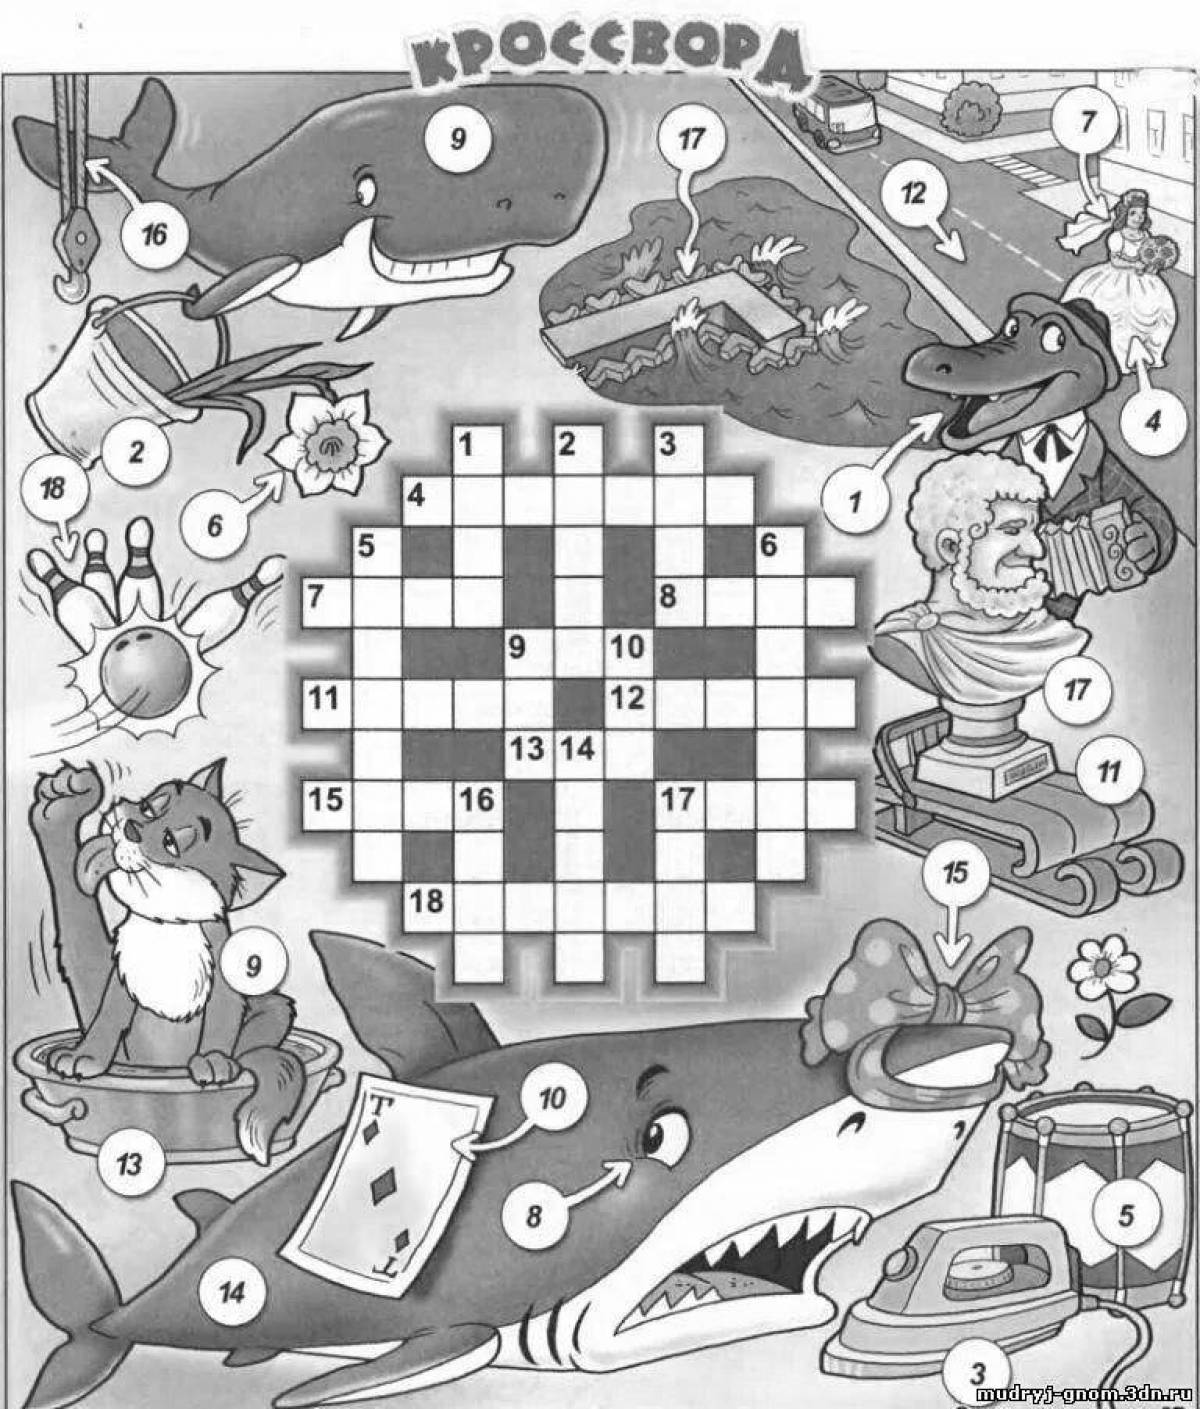 Ceramic tiles handmade 7 letters crossword answer #2